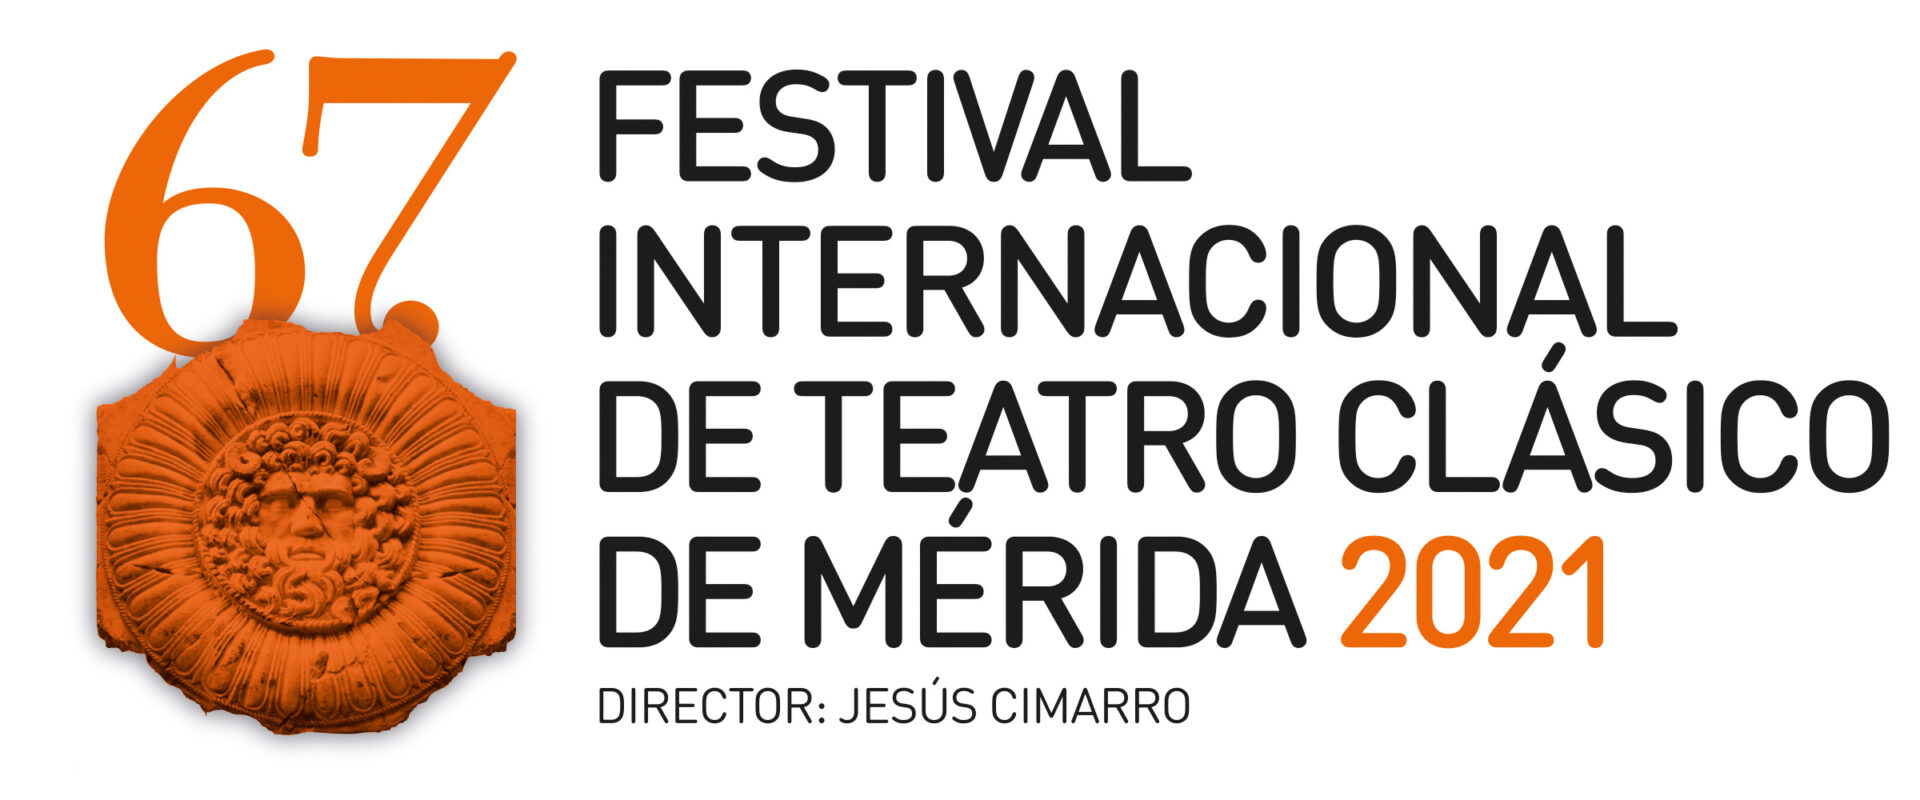 Logotipo del Festival Internacional de Teatro Clásico de Mérida 2021